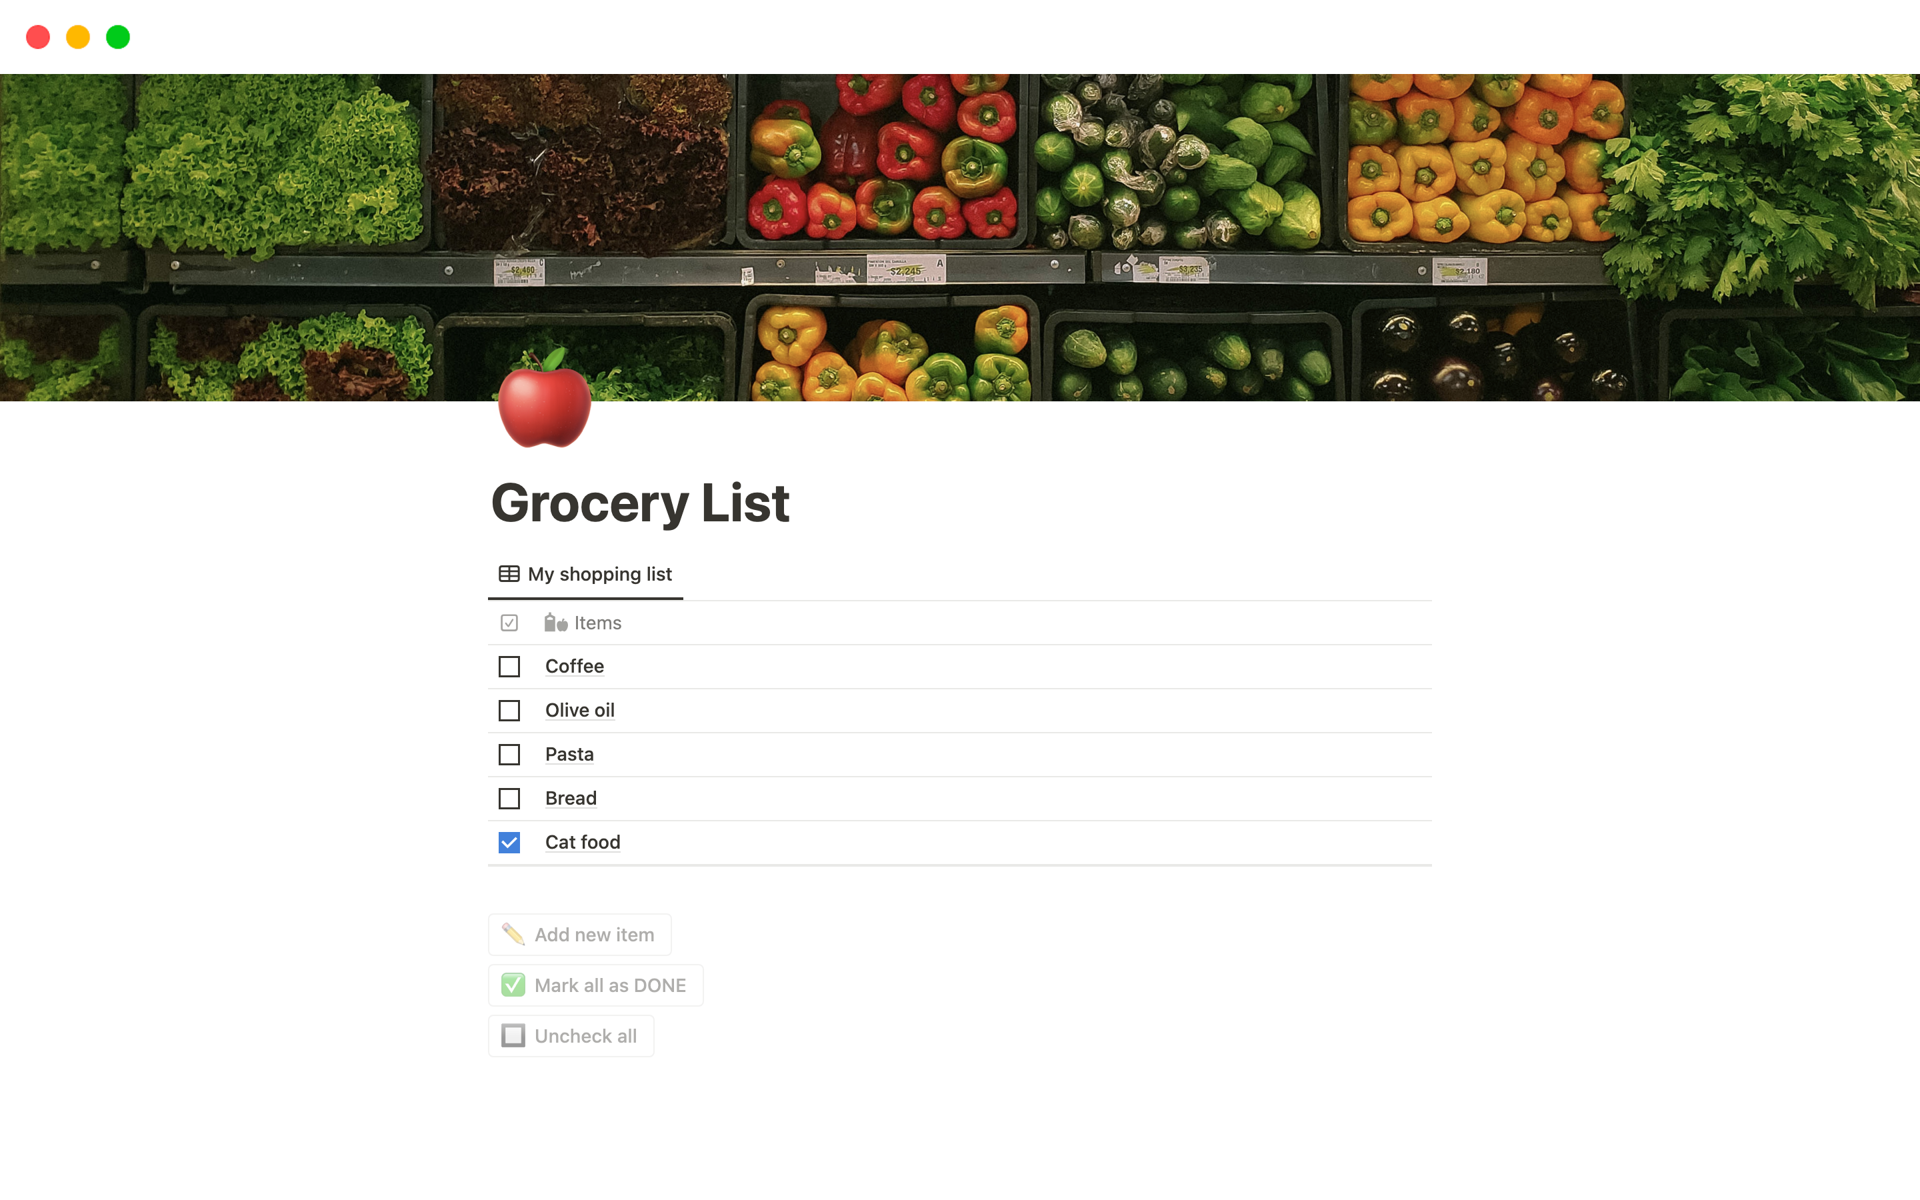 Uma prévia do modelo para SimpleShop: The Simplest Grocery List